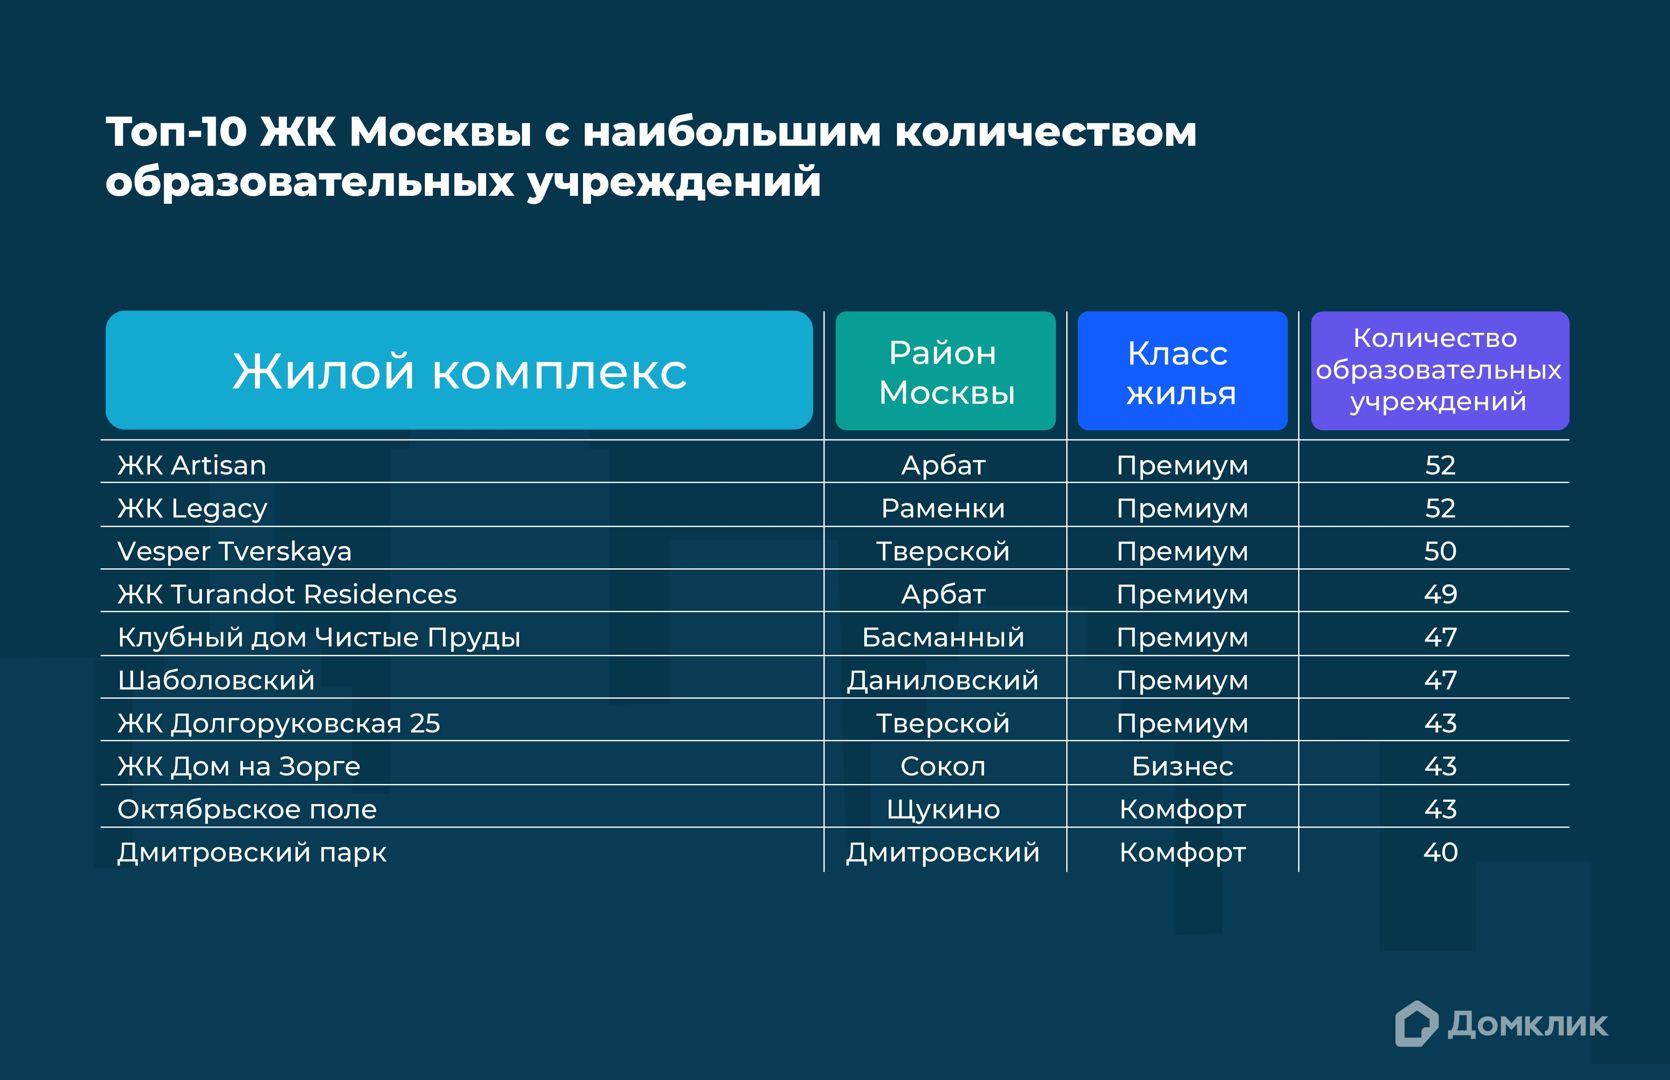 Топ-10 жилых комплексов Москвы, возле которых расположено наибольшее количество образовательных учреждений (на расстоянии до 1 км). Указаны районы Москвы, в которых расположены ЖК, а также класс жилья. 